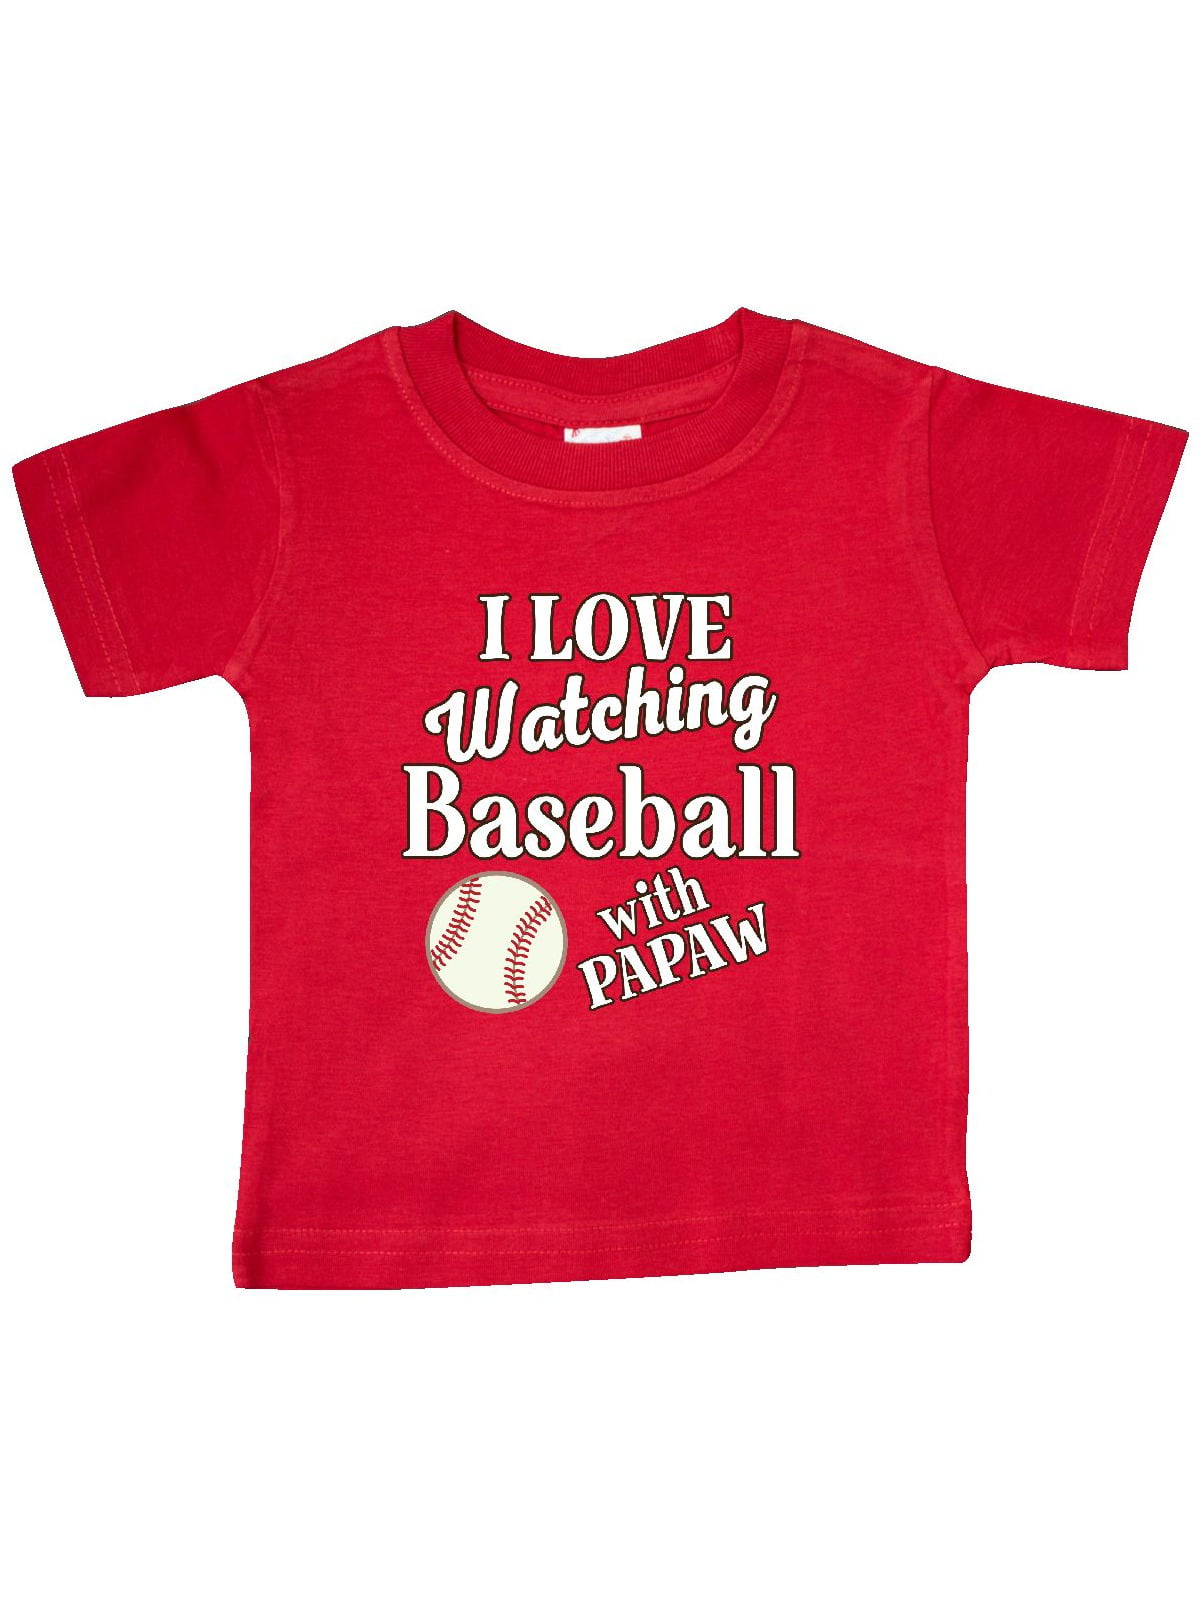 baseball t shirt 12 months